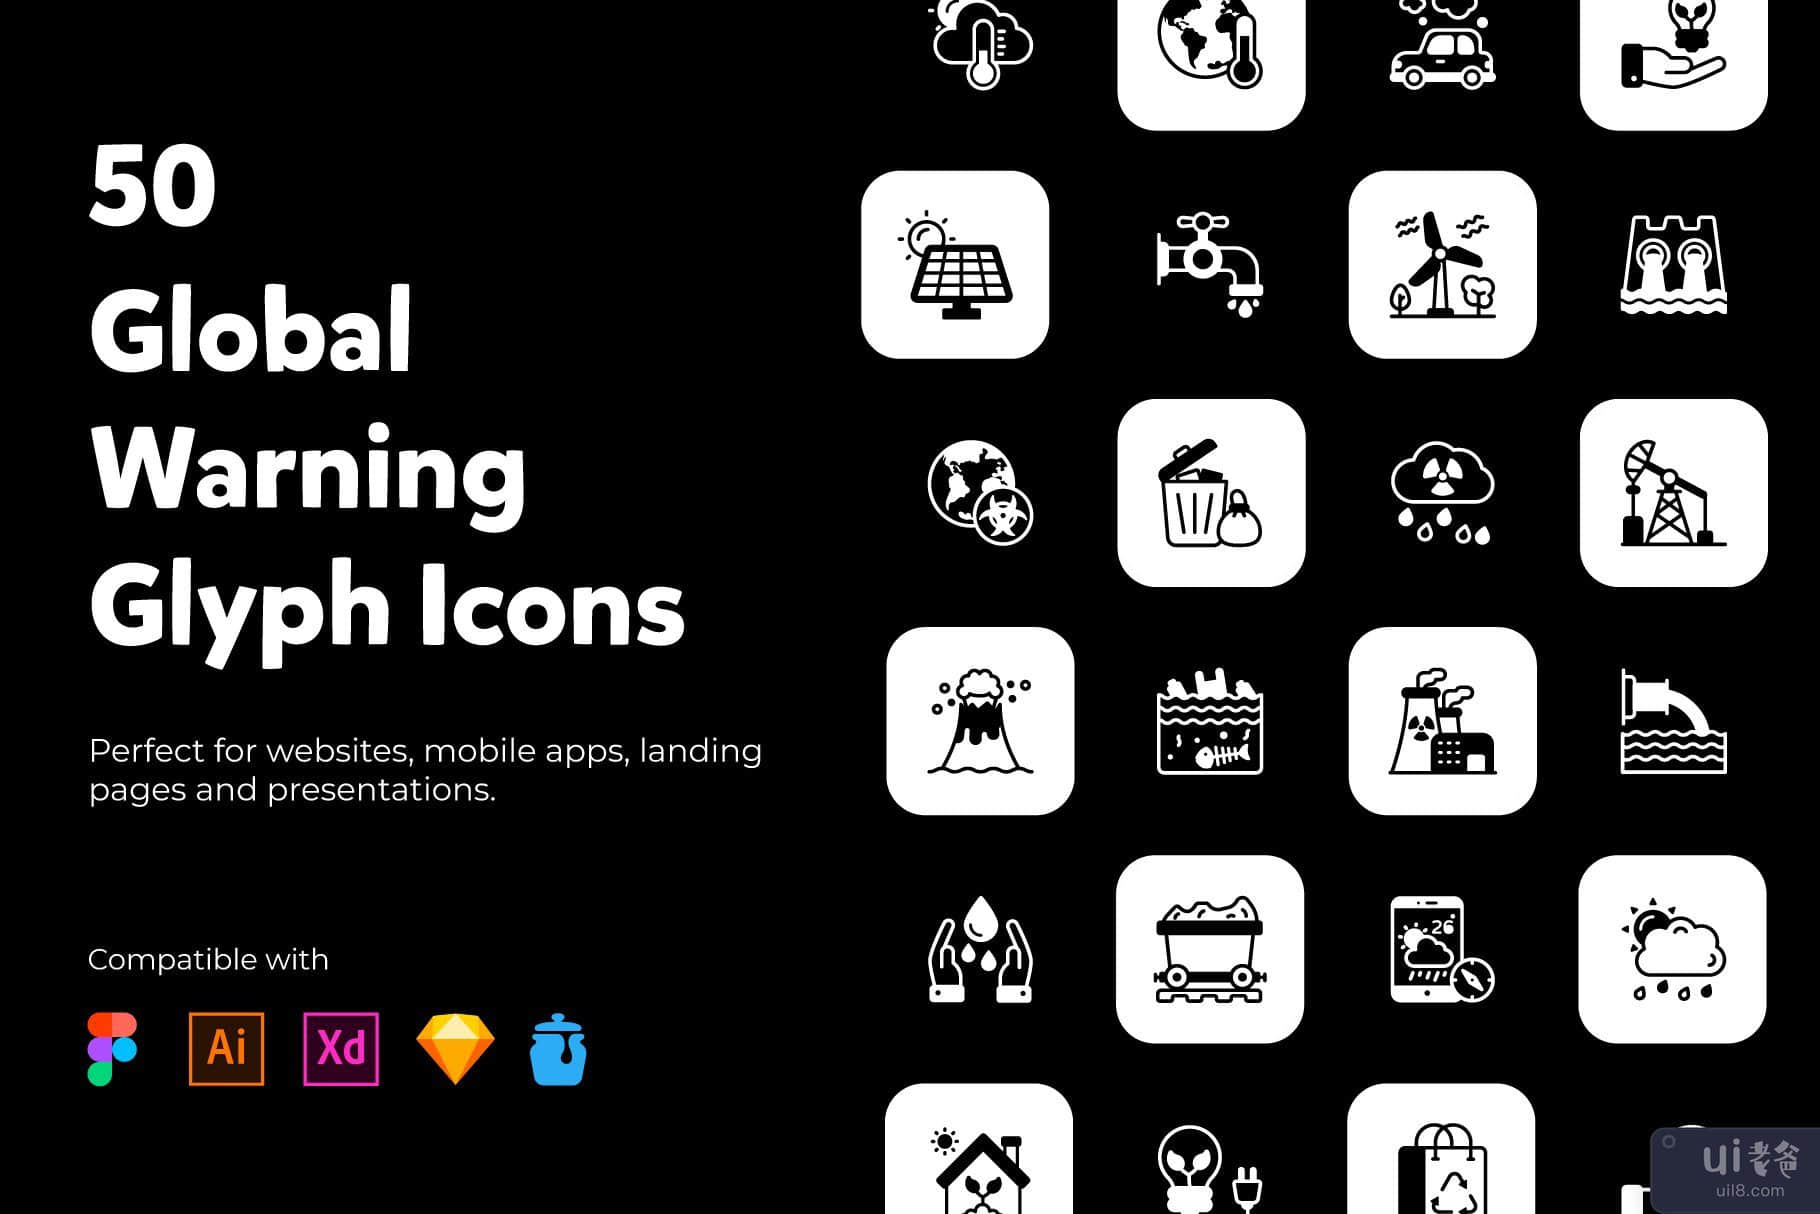 全球变暖字形图标(Global Warming Glyph Icons)插图6